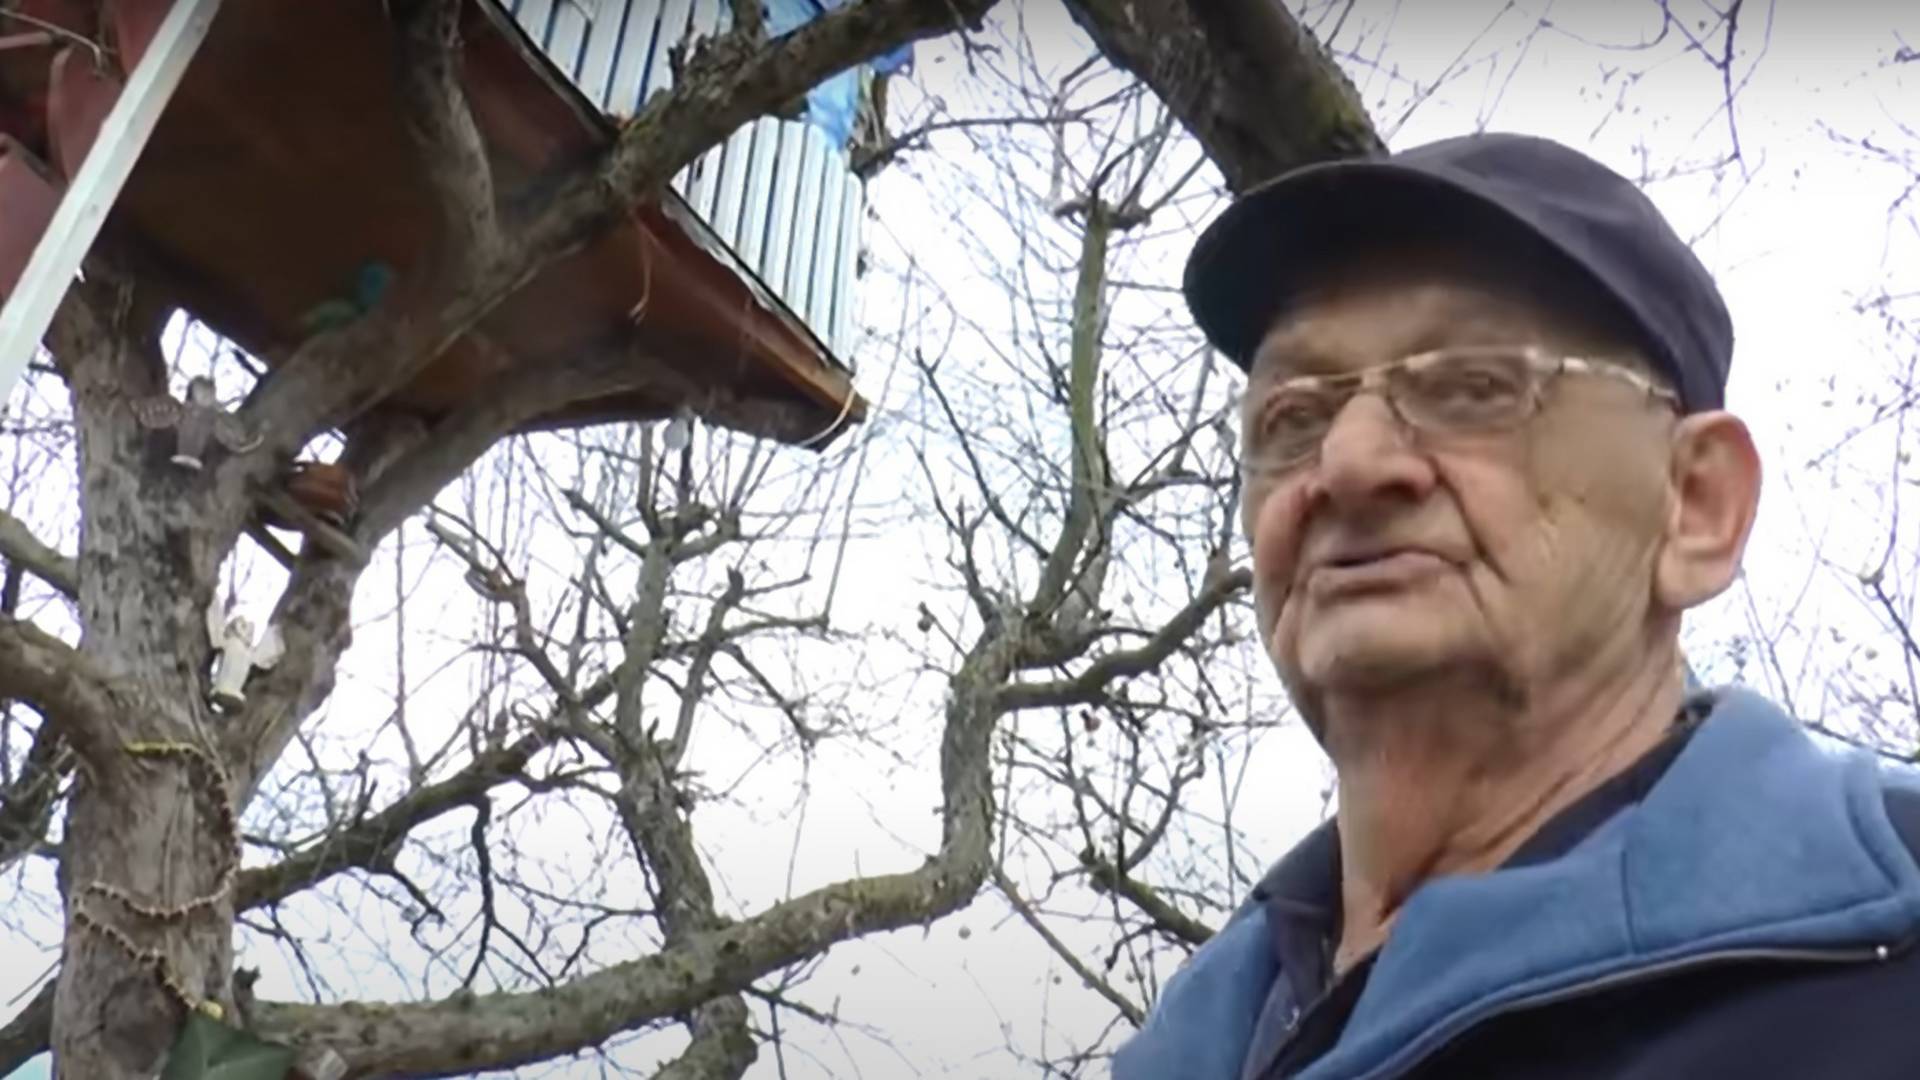 Žarko napravio kuću na drvetu i tu živi već 10 godina: Samo tu mogu da se odmorim kao čovek